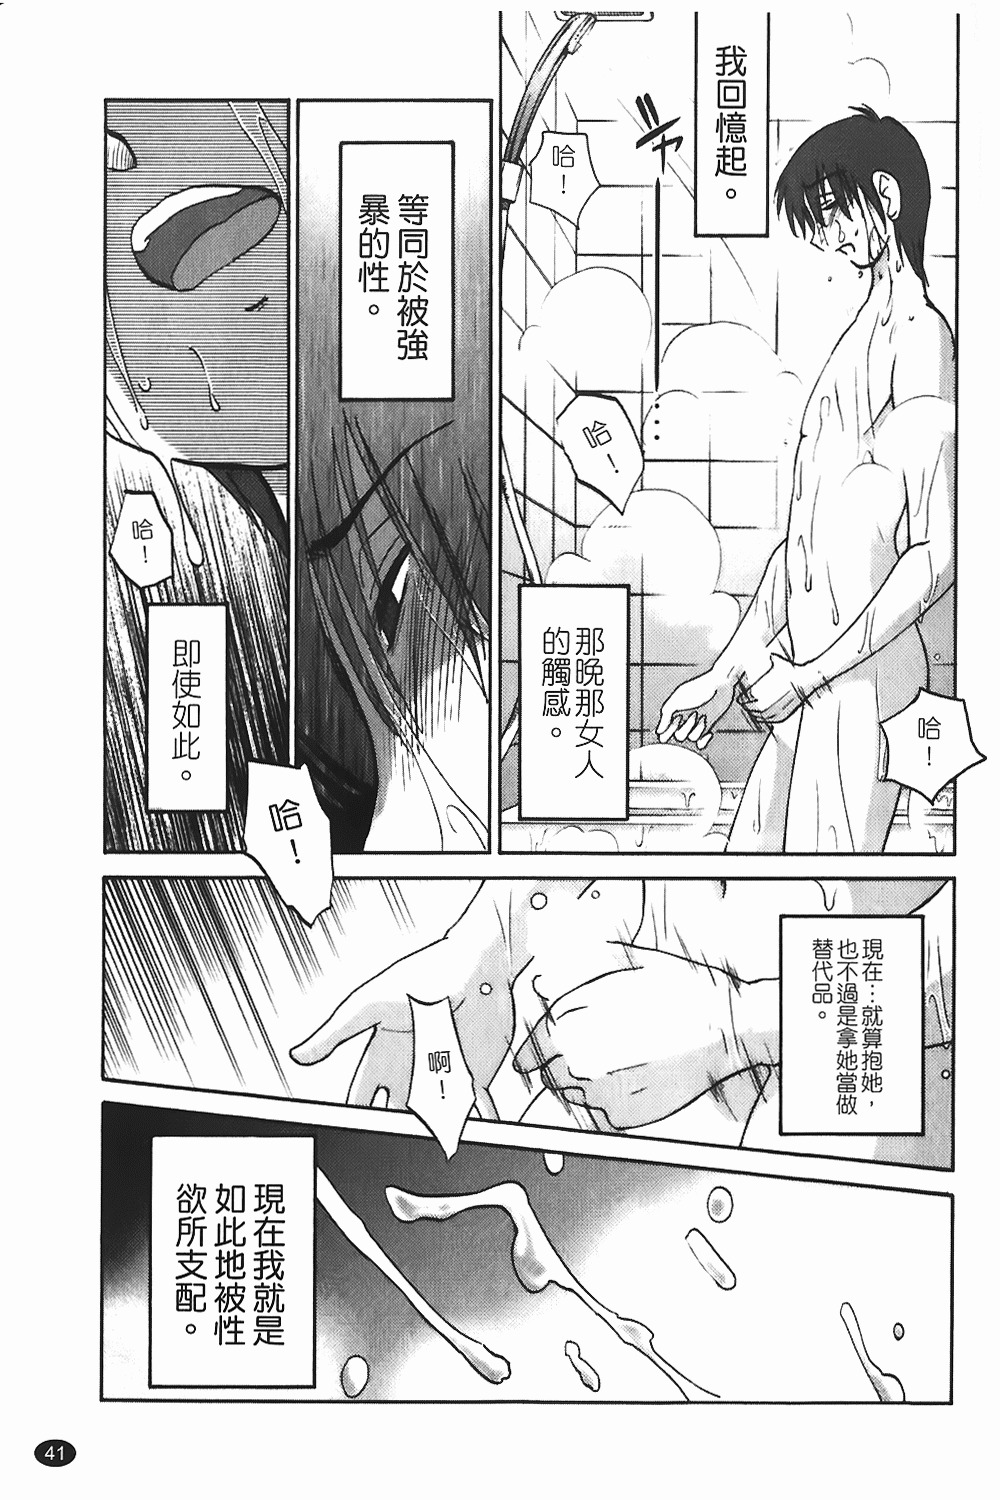 [TsuyaTsuya] Monokage no Iris 1 | 陰影中的伊利斯 1 [Chinese] page 38 full